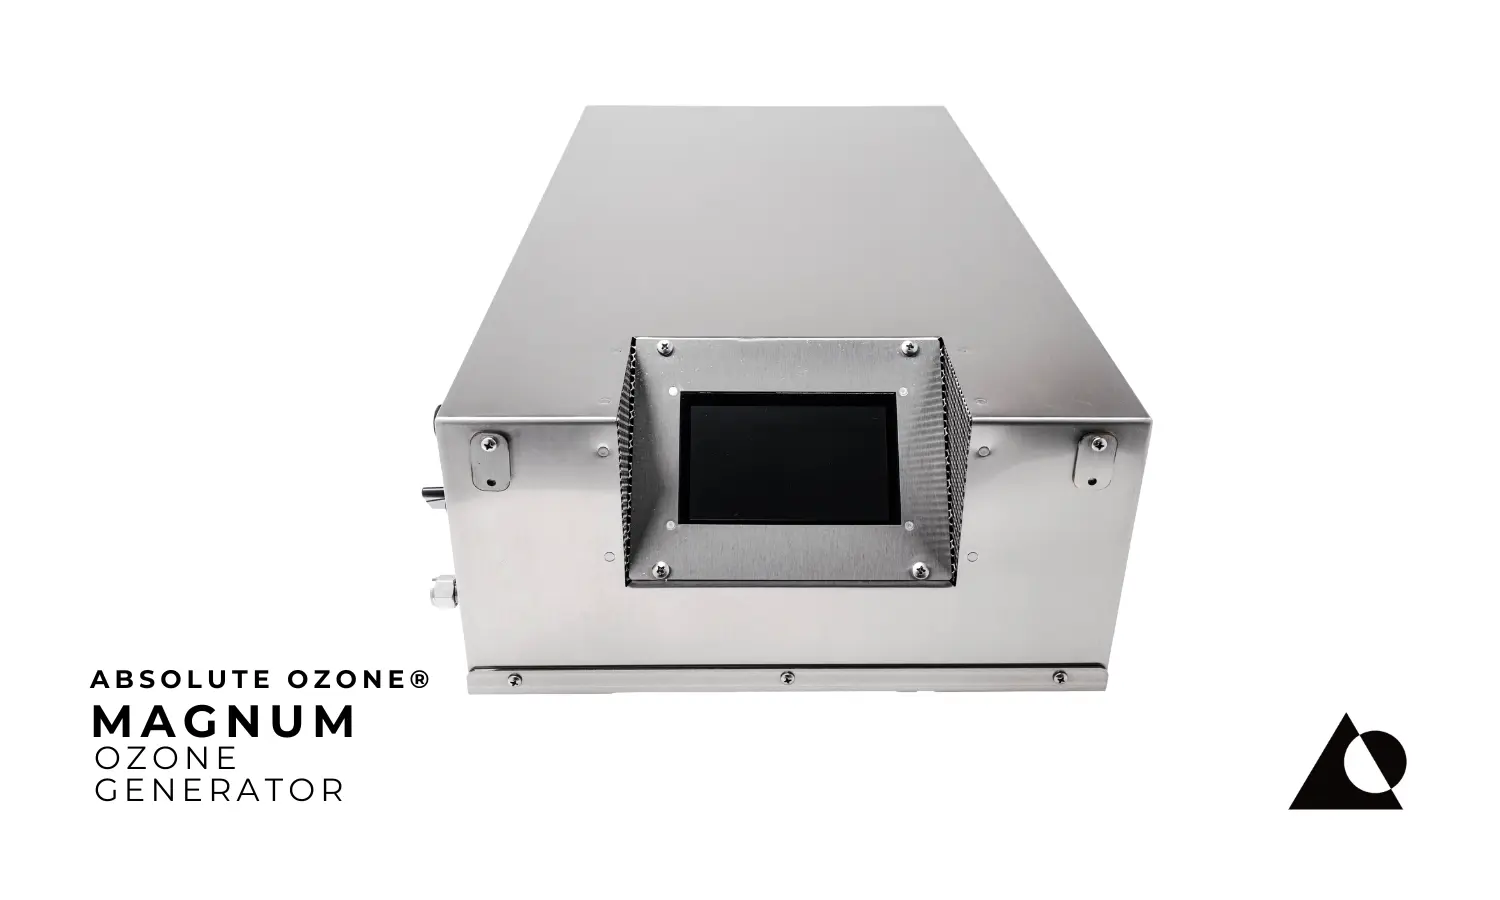 Absolute Ozone® MAGNUM Industrial Generador de Ozono